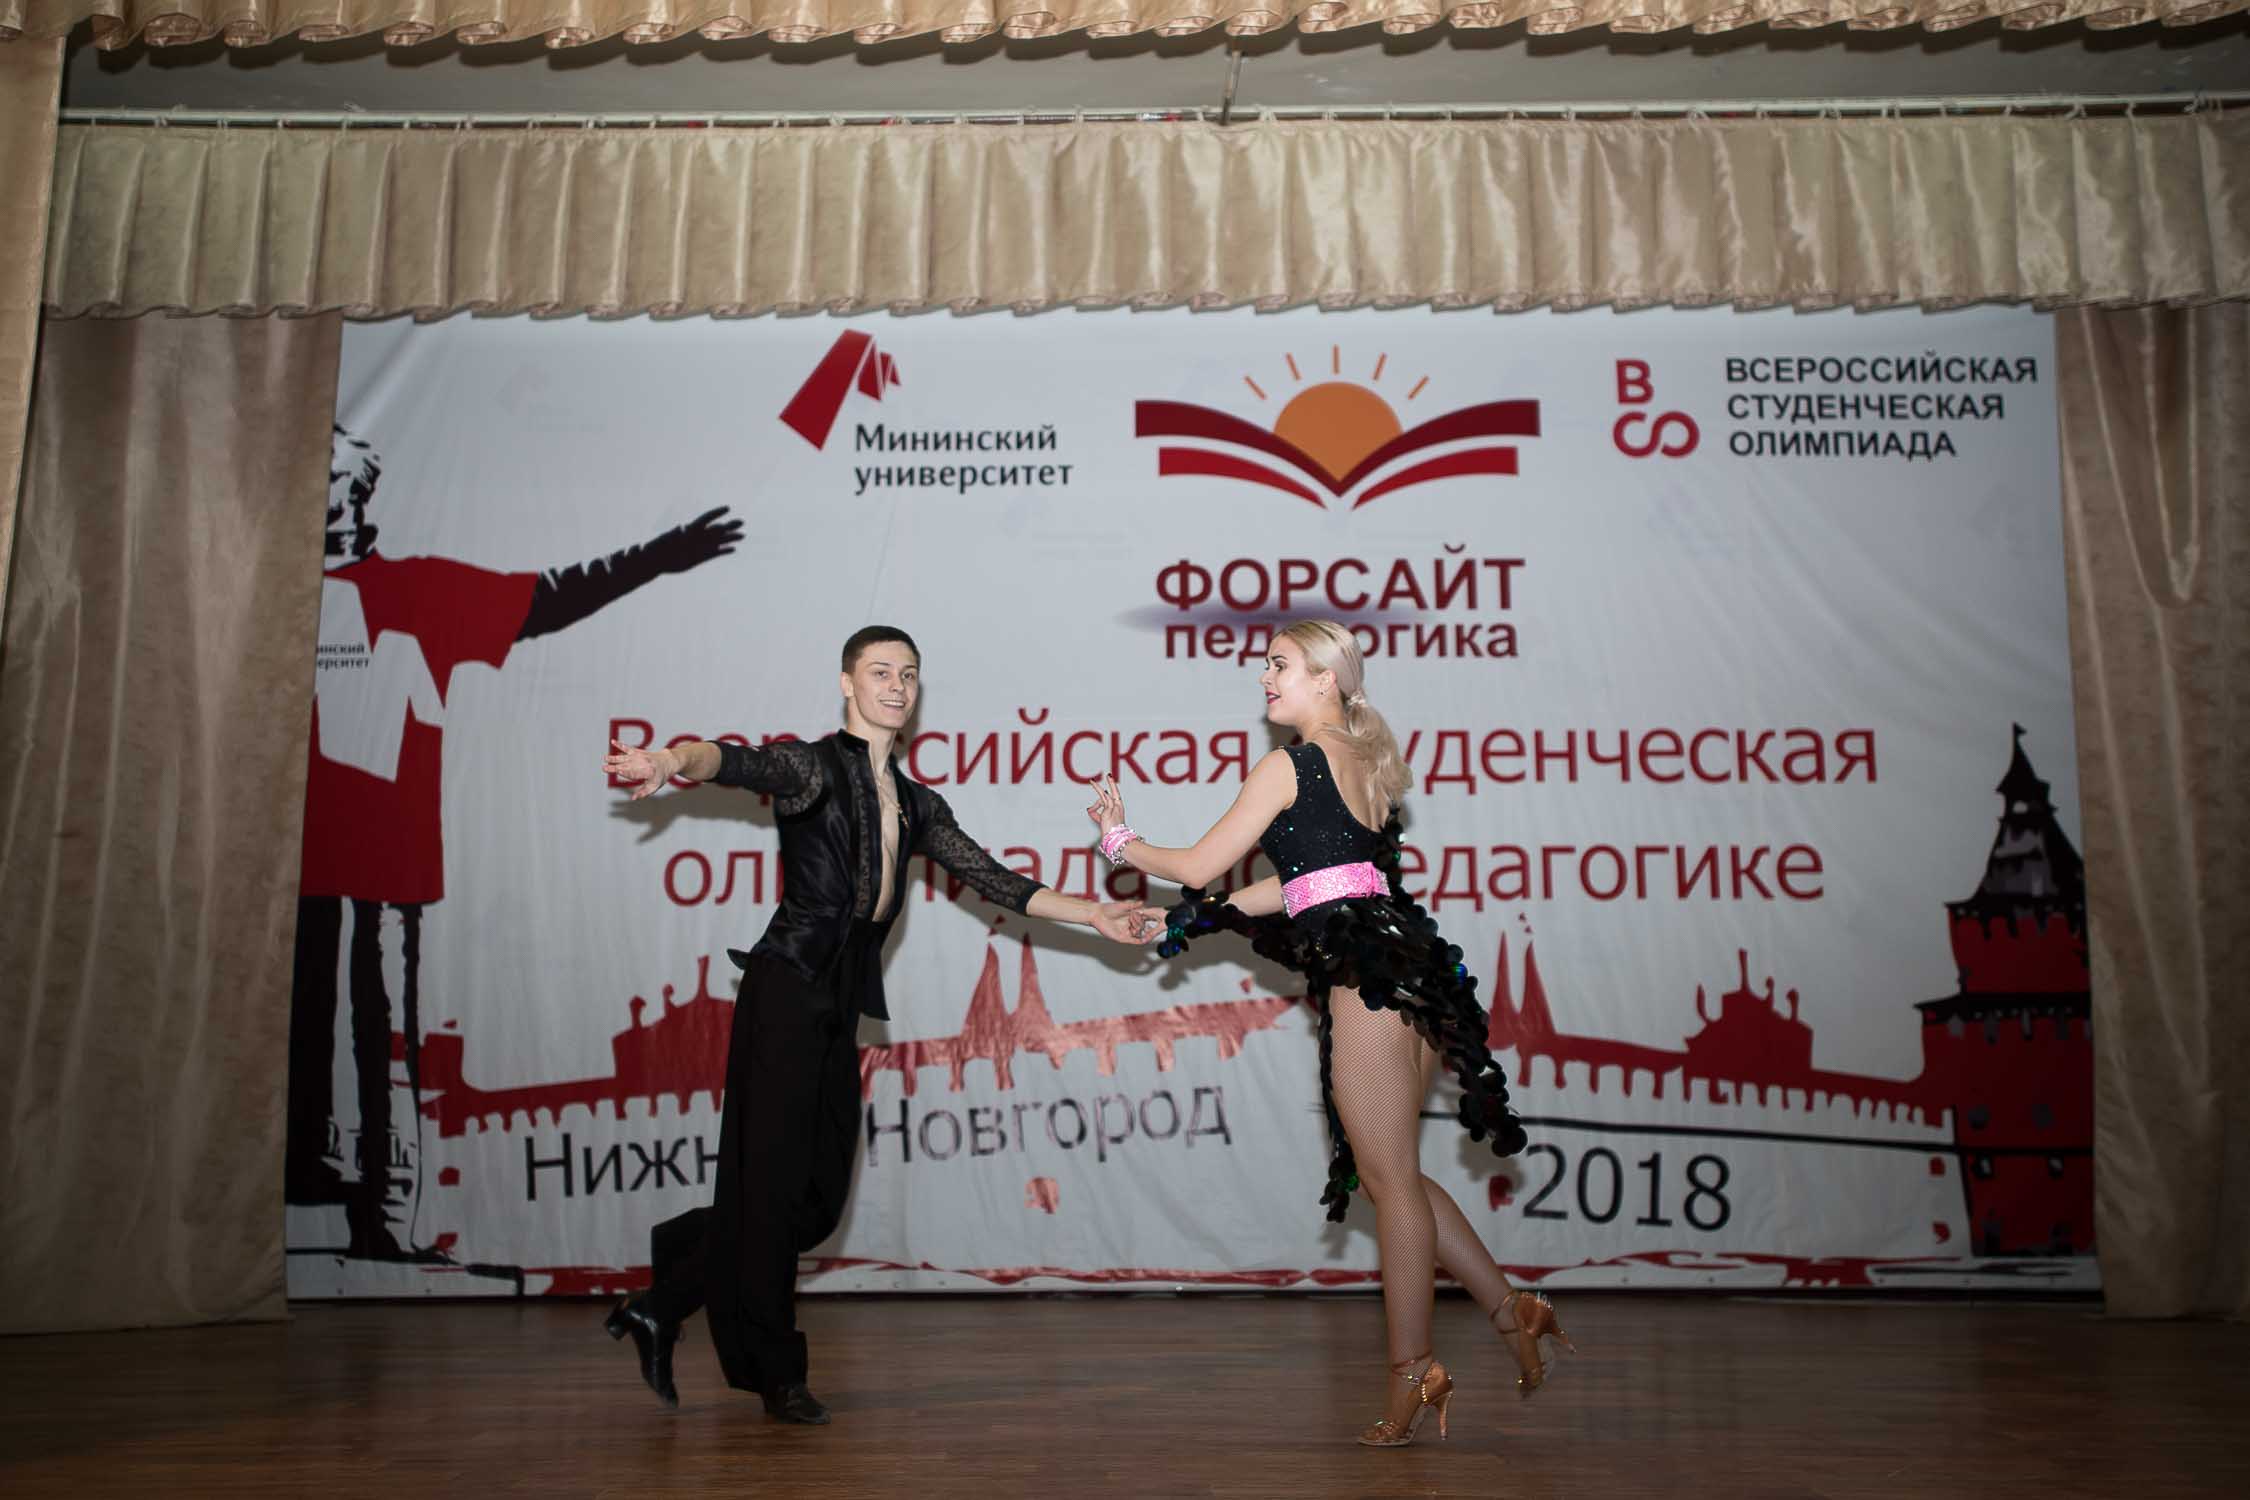 Всероссийская студенческая олимпиада «ФОРСАЙТ-ПЕДАГОГИКА» торжественно завершила свою работу